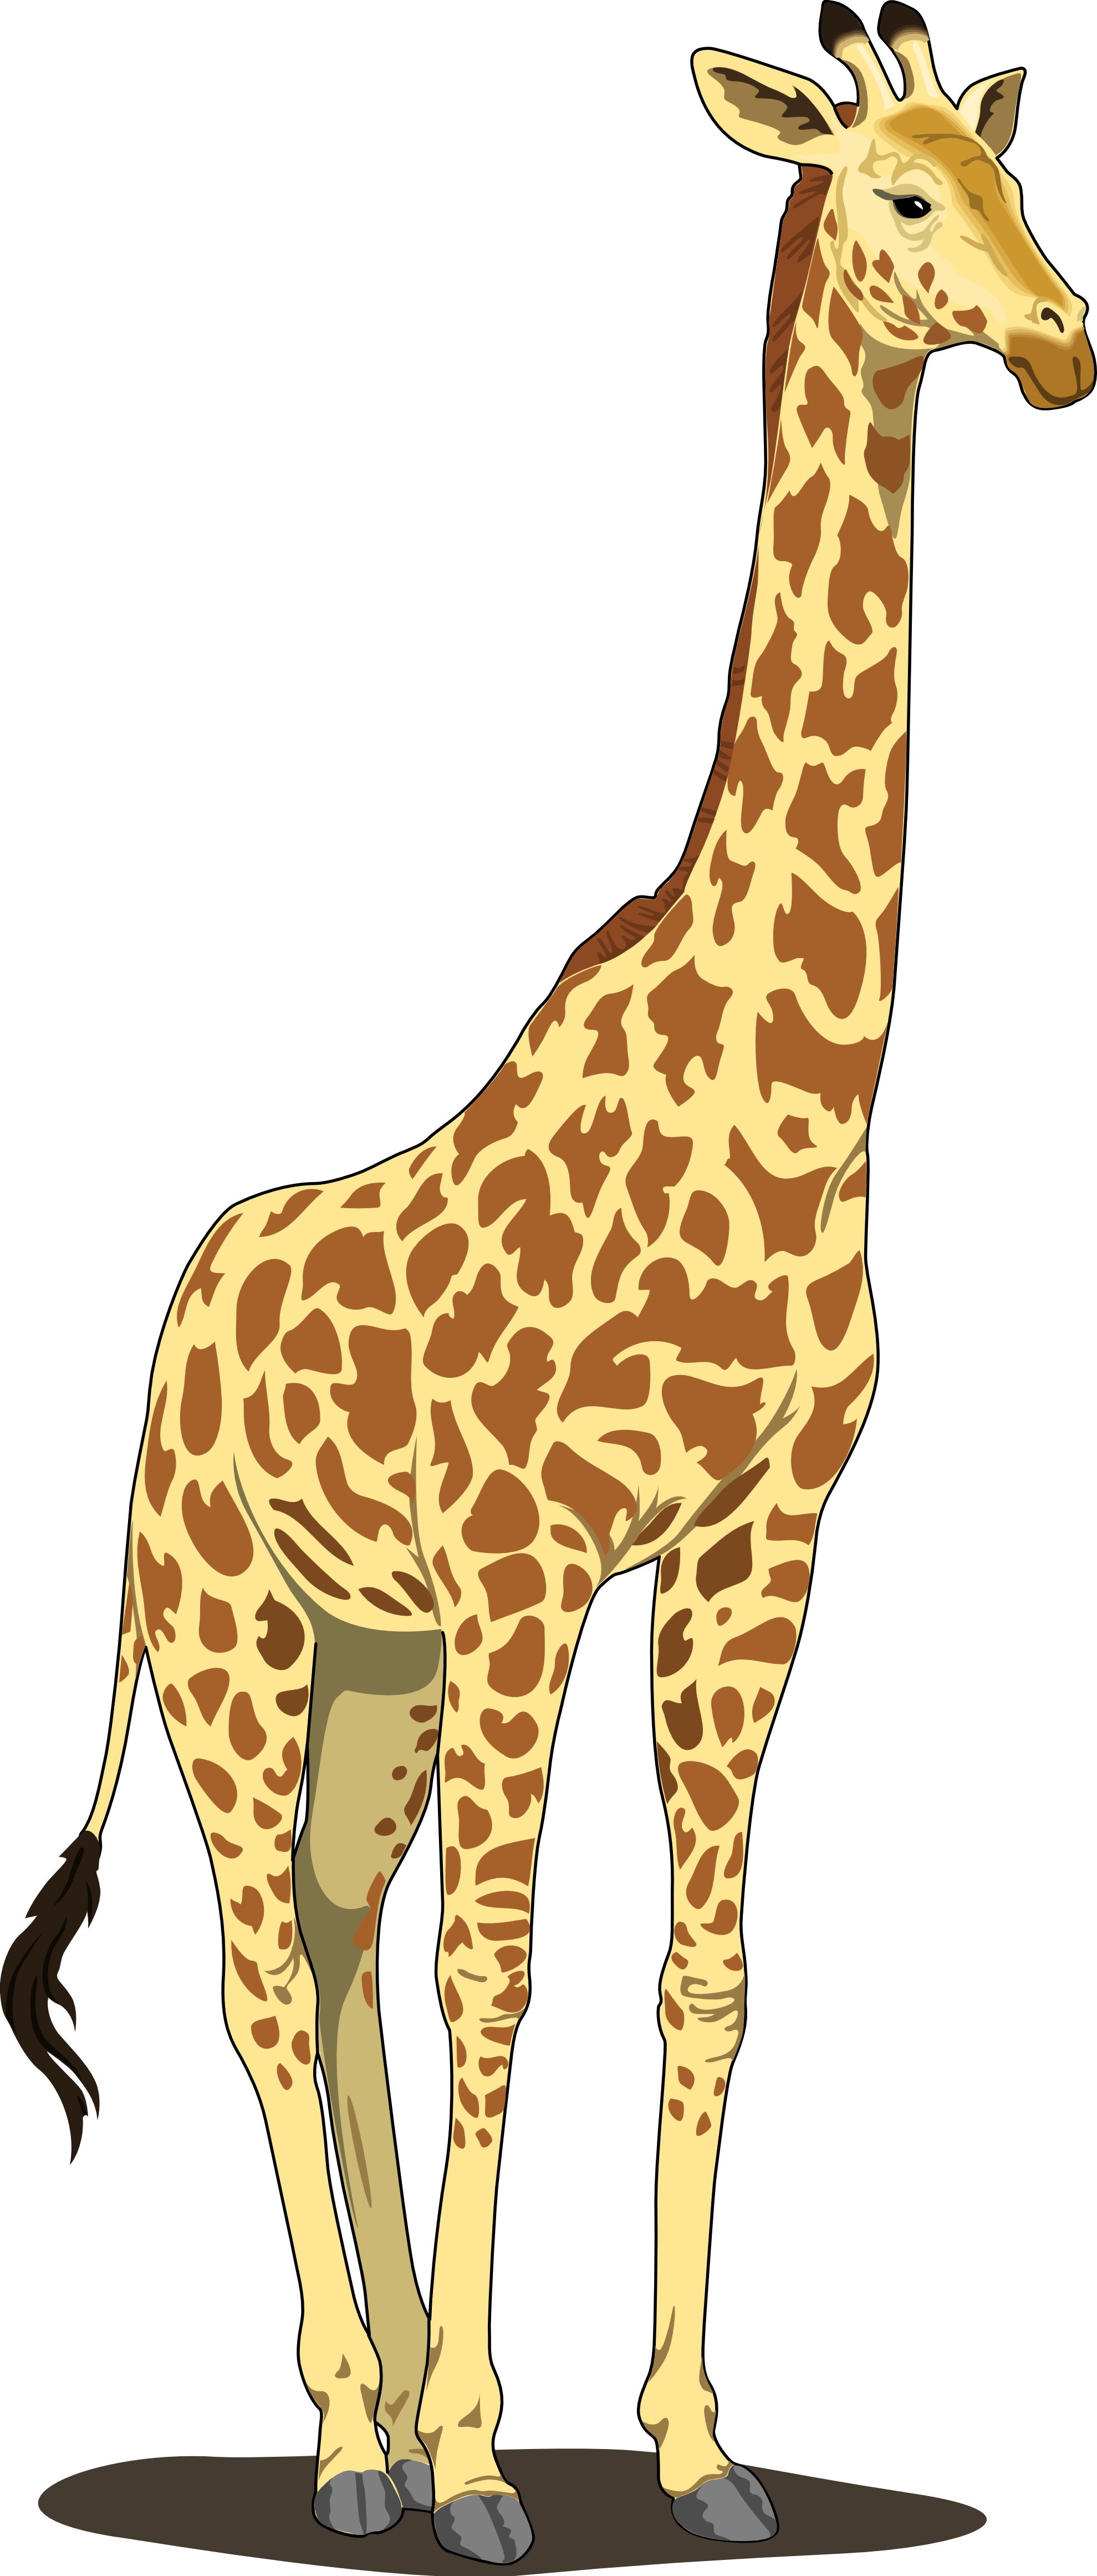 Giraffe PNG image free download 